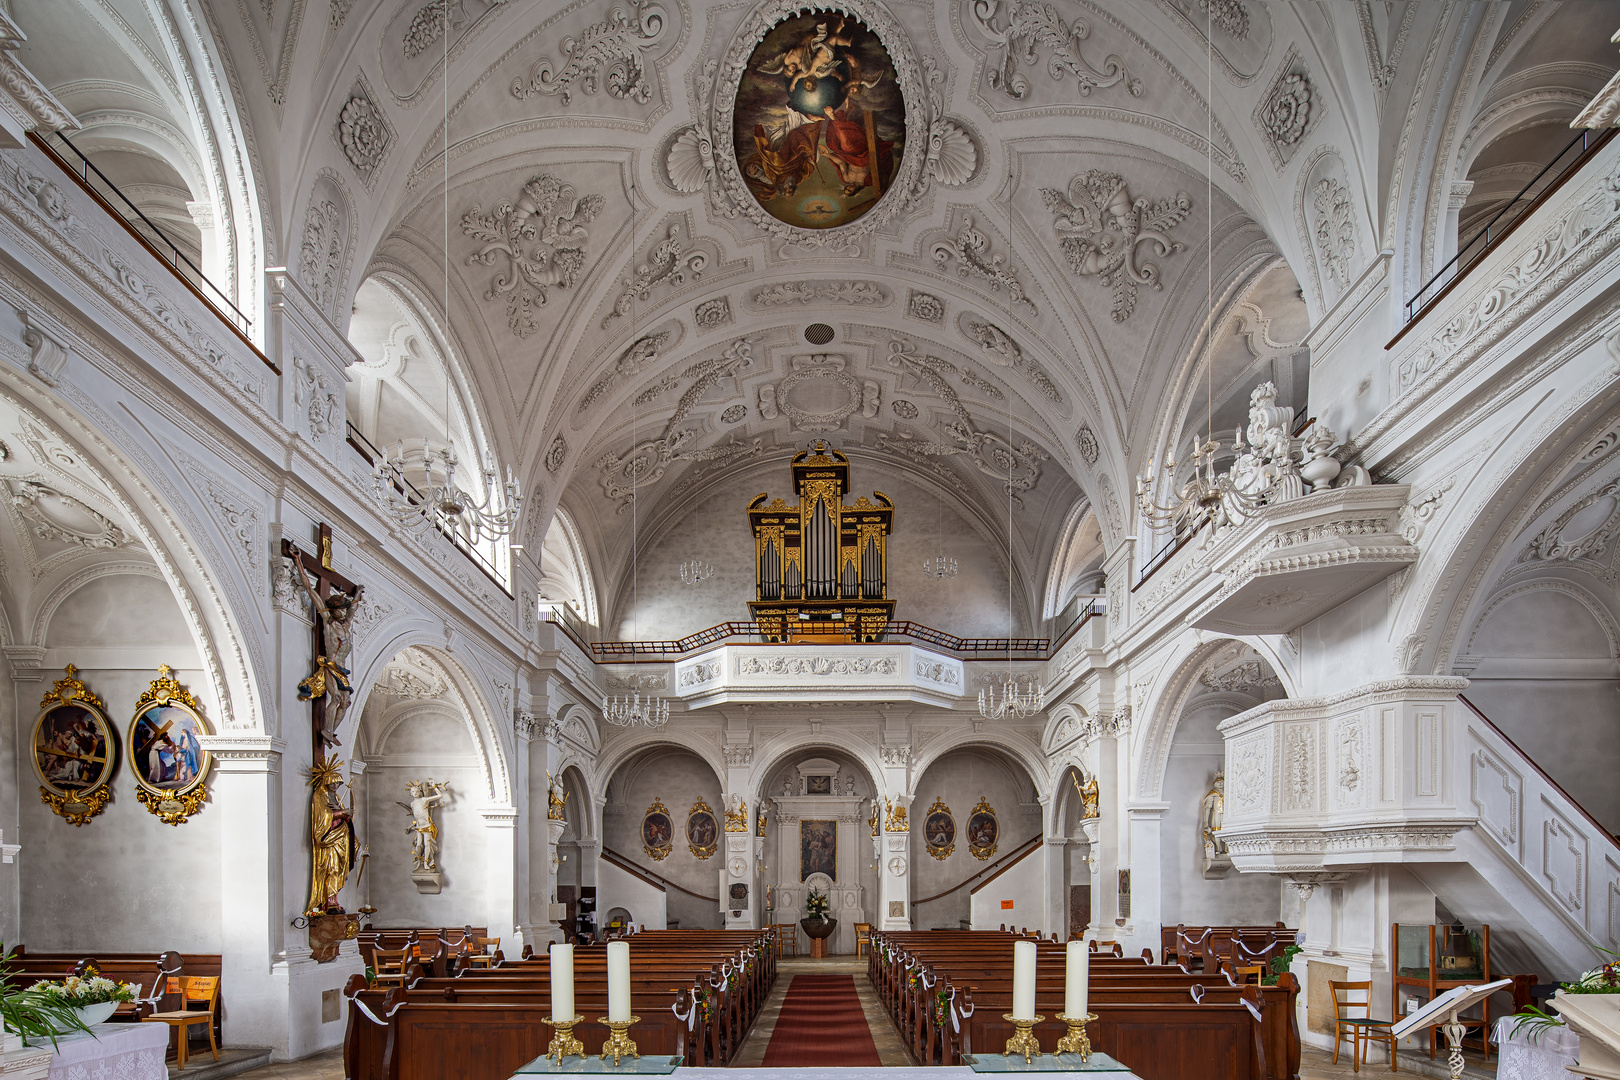  Mein "Blick zur Orgel " in Pfarrkirche Pfarrkirche Mariä Himmelfahrt (Pfreimd)